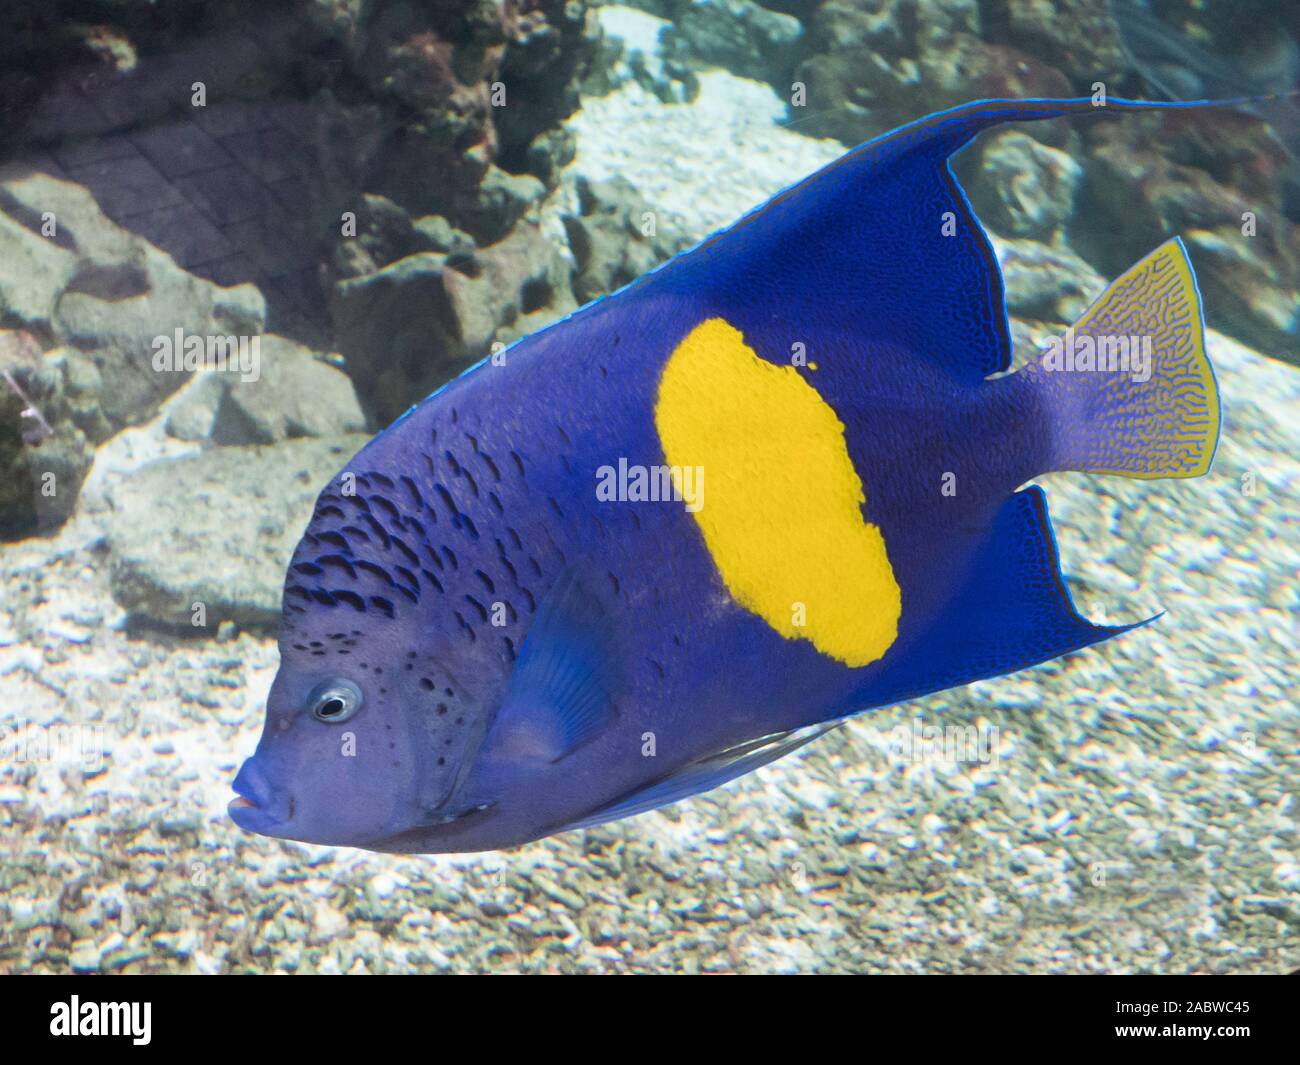 Arabischer Kaiserfisch, Pomacanthus maculosus Stock Photo